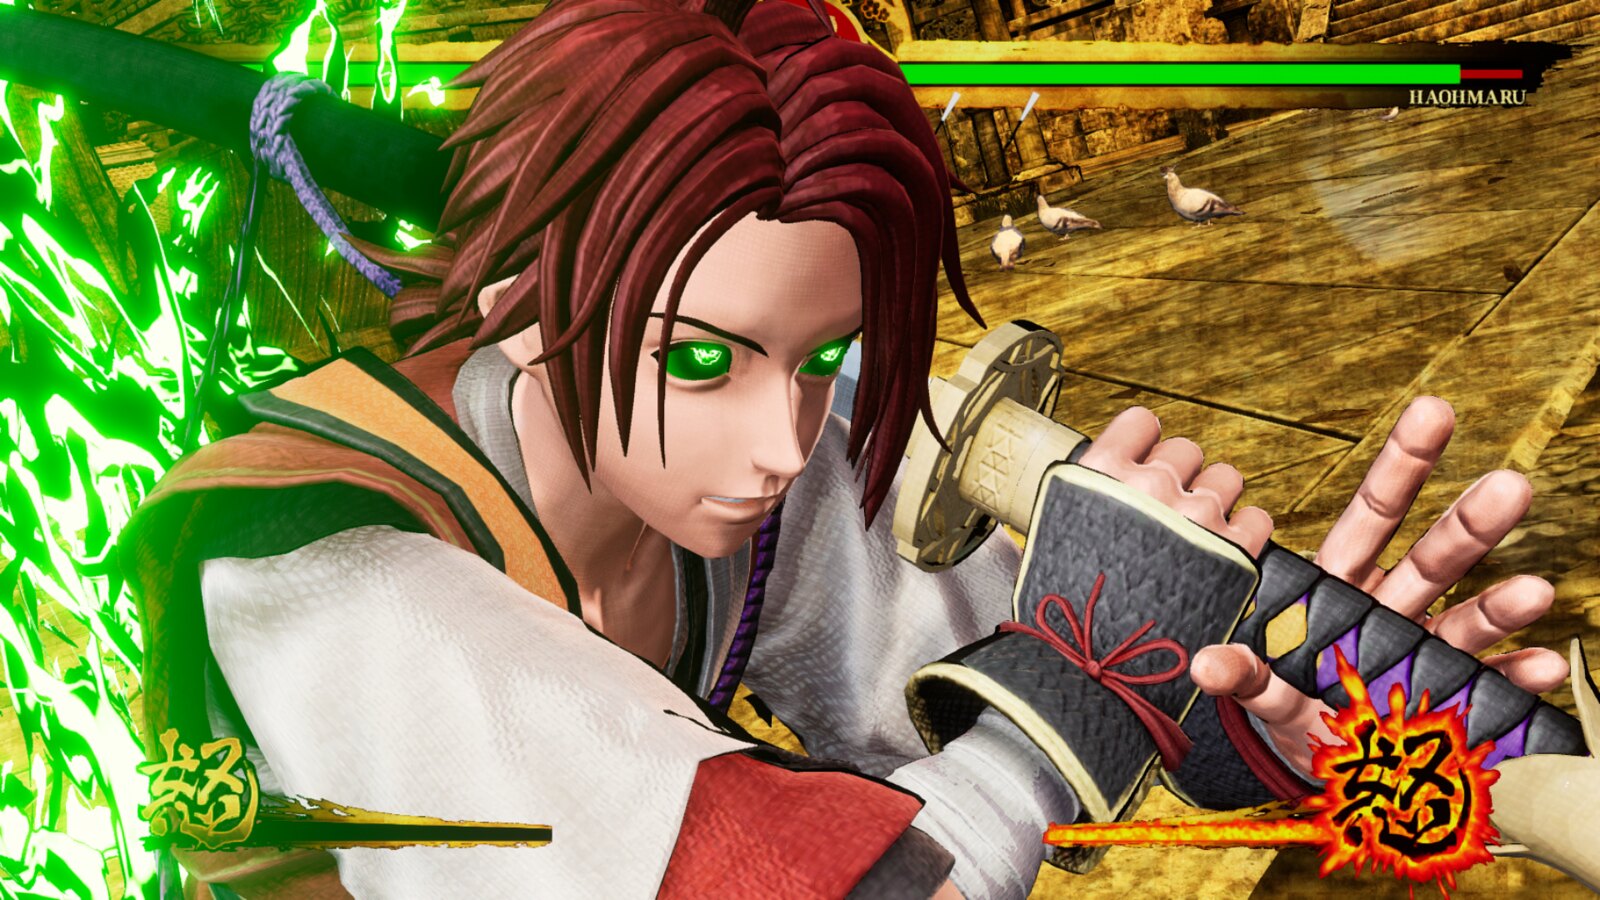 Shizumaru joins Samurai Shodown on PS4